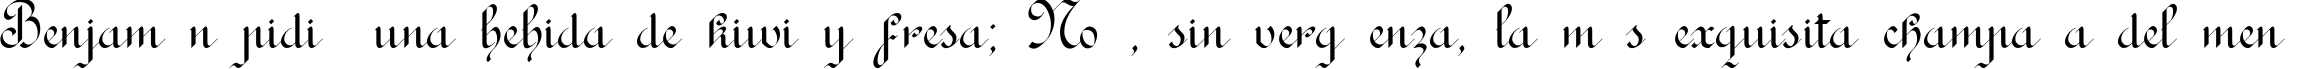 Пример написания шрифтом Rondo AncientOne текста на испанском